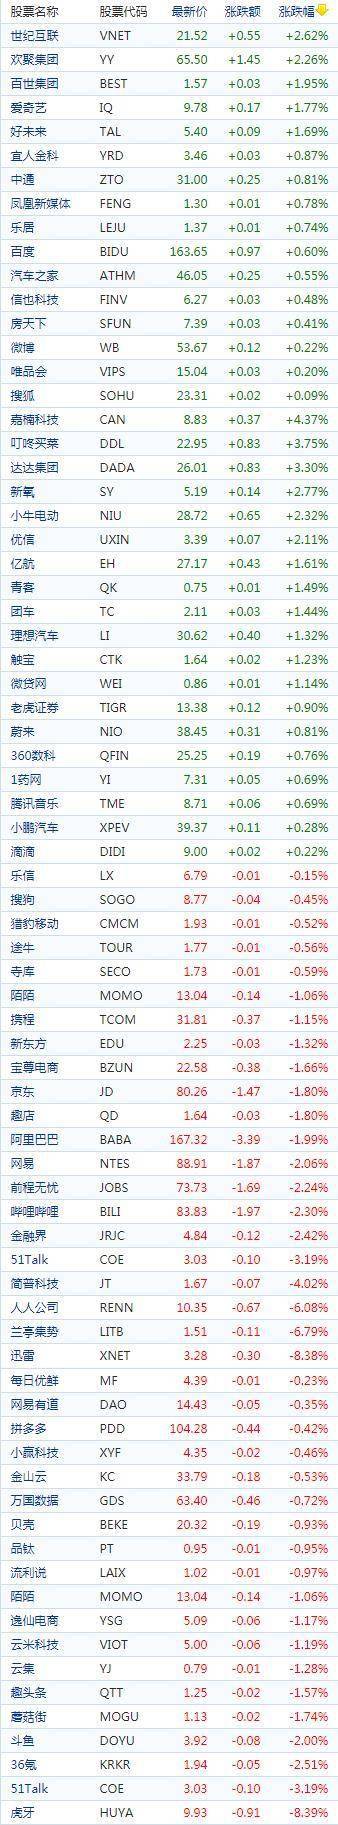 中国概念股周四收盘涨跌互现 虎牙跌超8%洋葱集团涨超12%